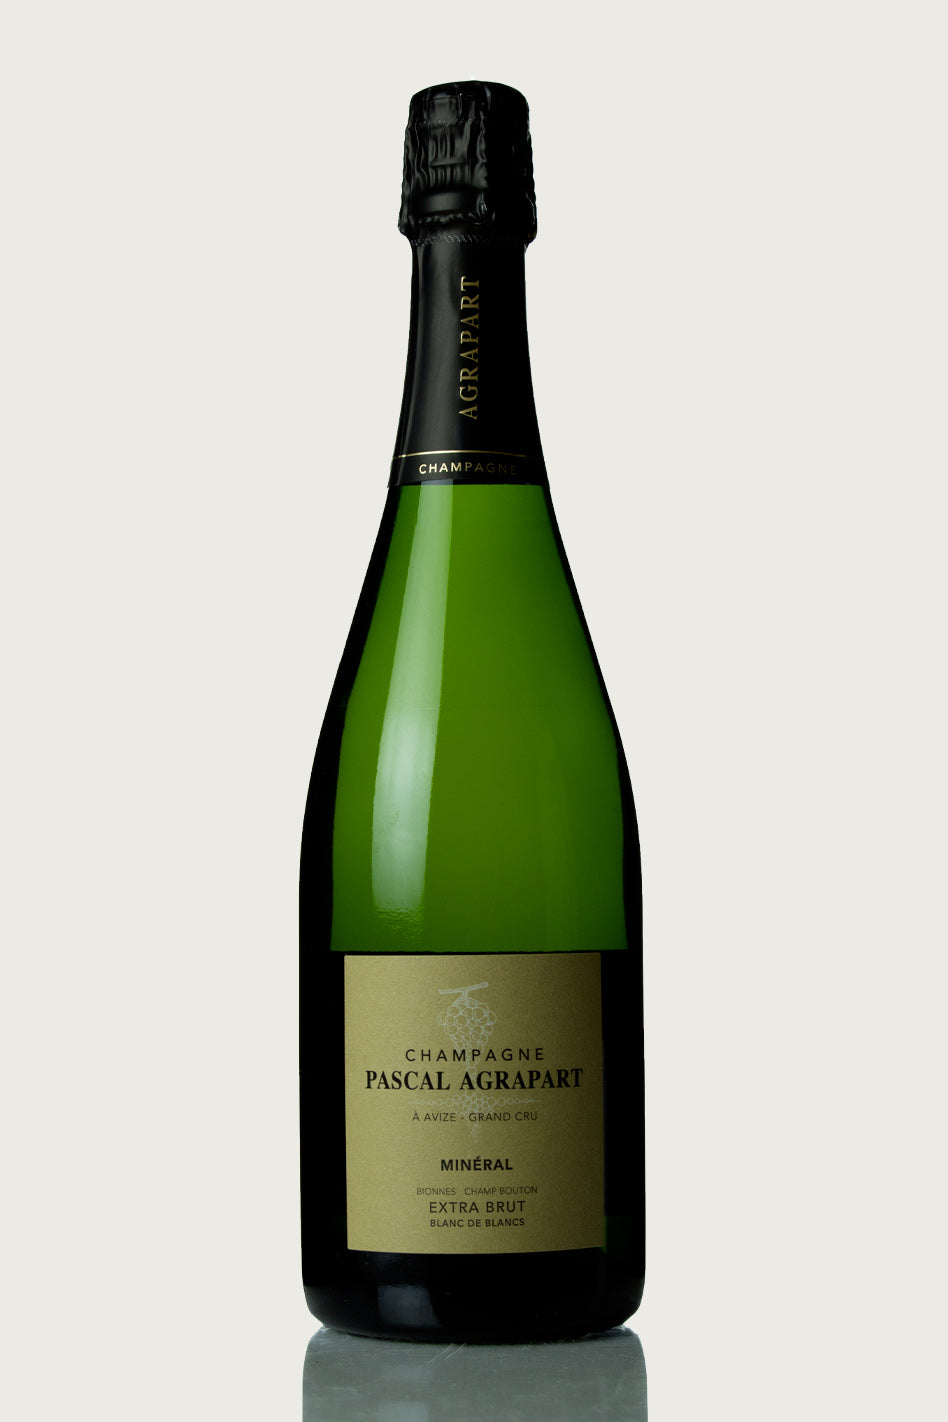 Agrapart Champagne Grand Cru 'Minéral' 2017